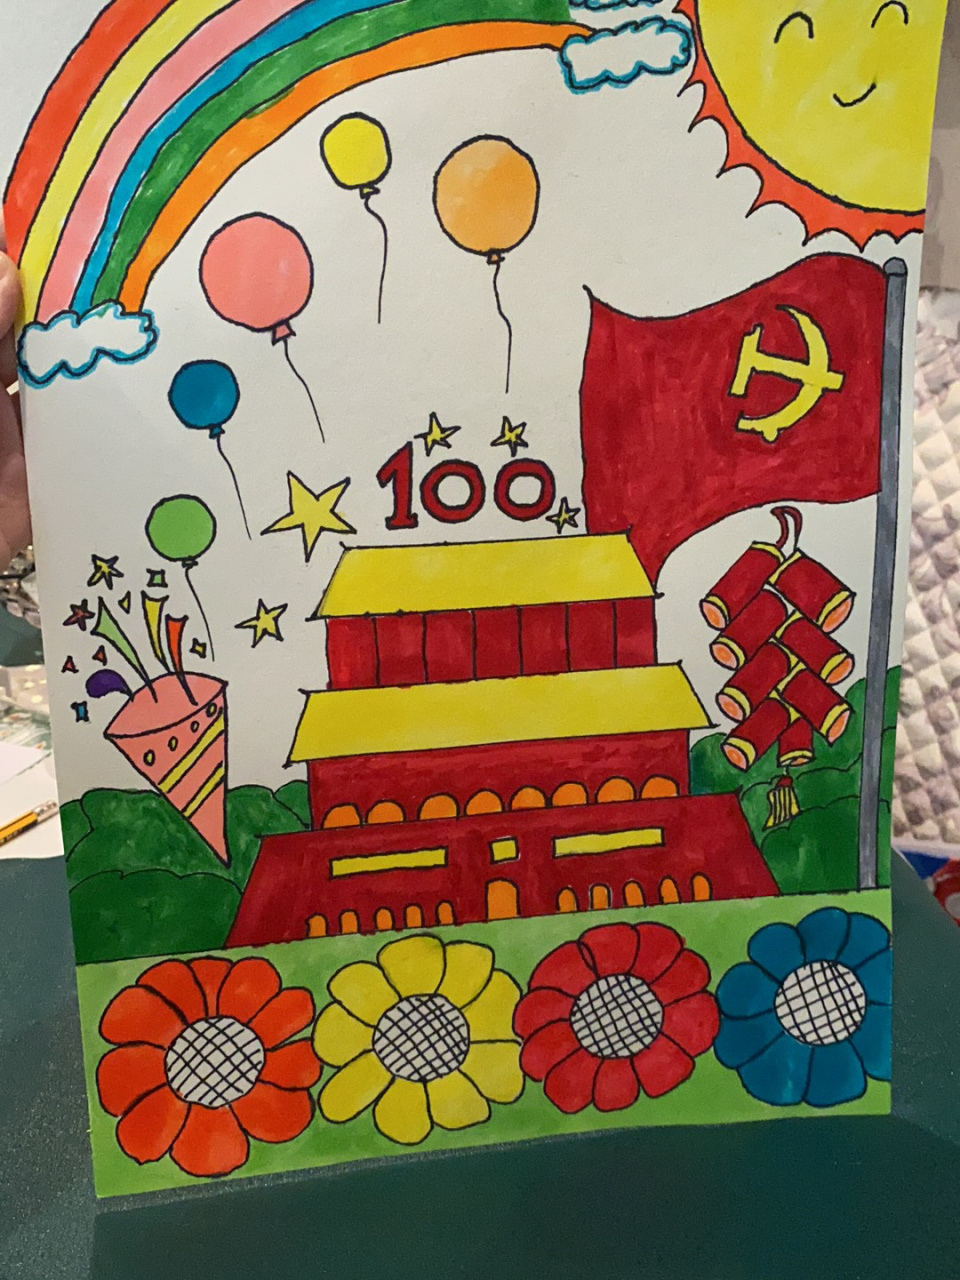 幼儿园建党100周年主题绘画96 学校老师布置的作业,费了老大的劲